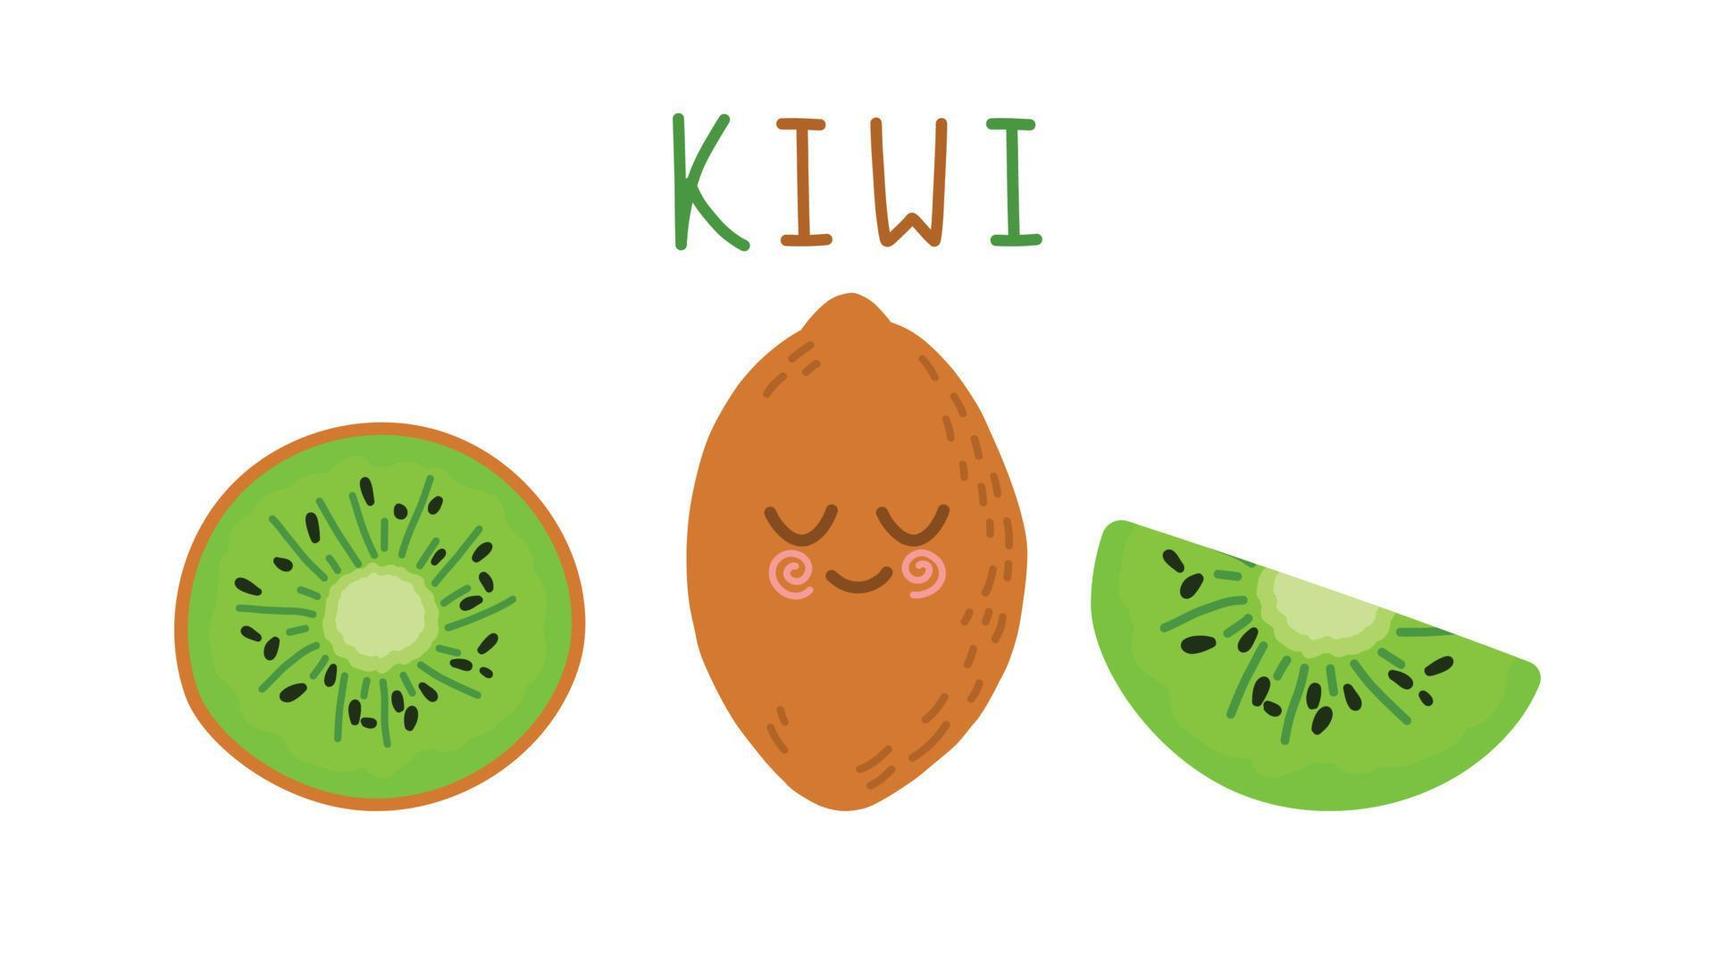 caracteres de vetor de kiwis isolados no fundo branco. kiwi kawaii